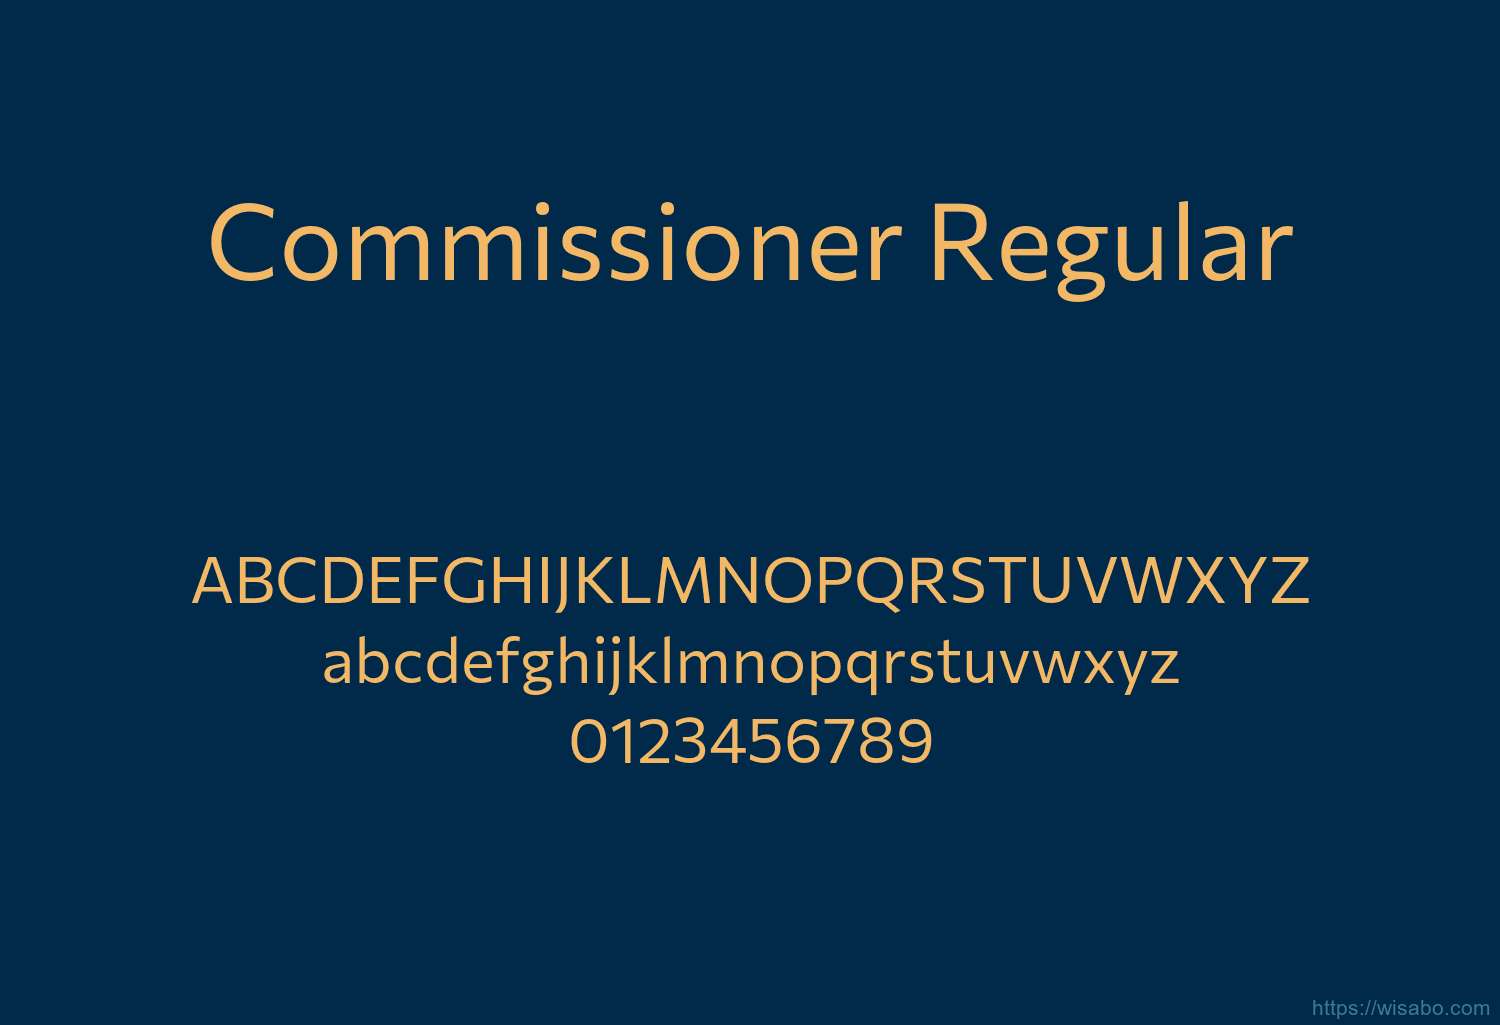 Commissioner Regular